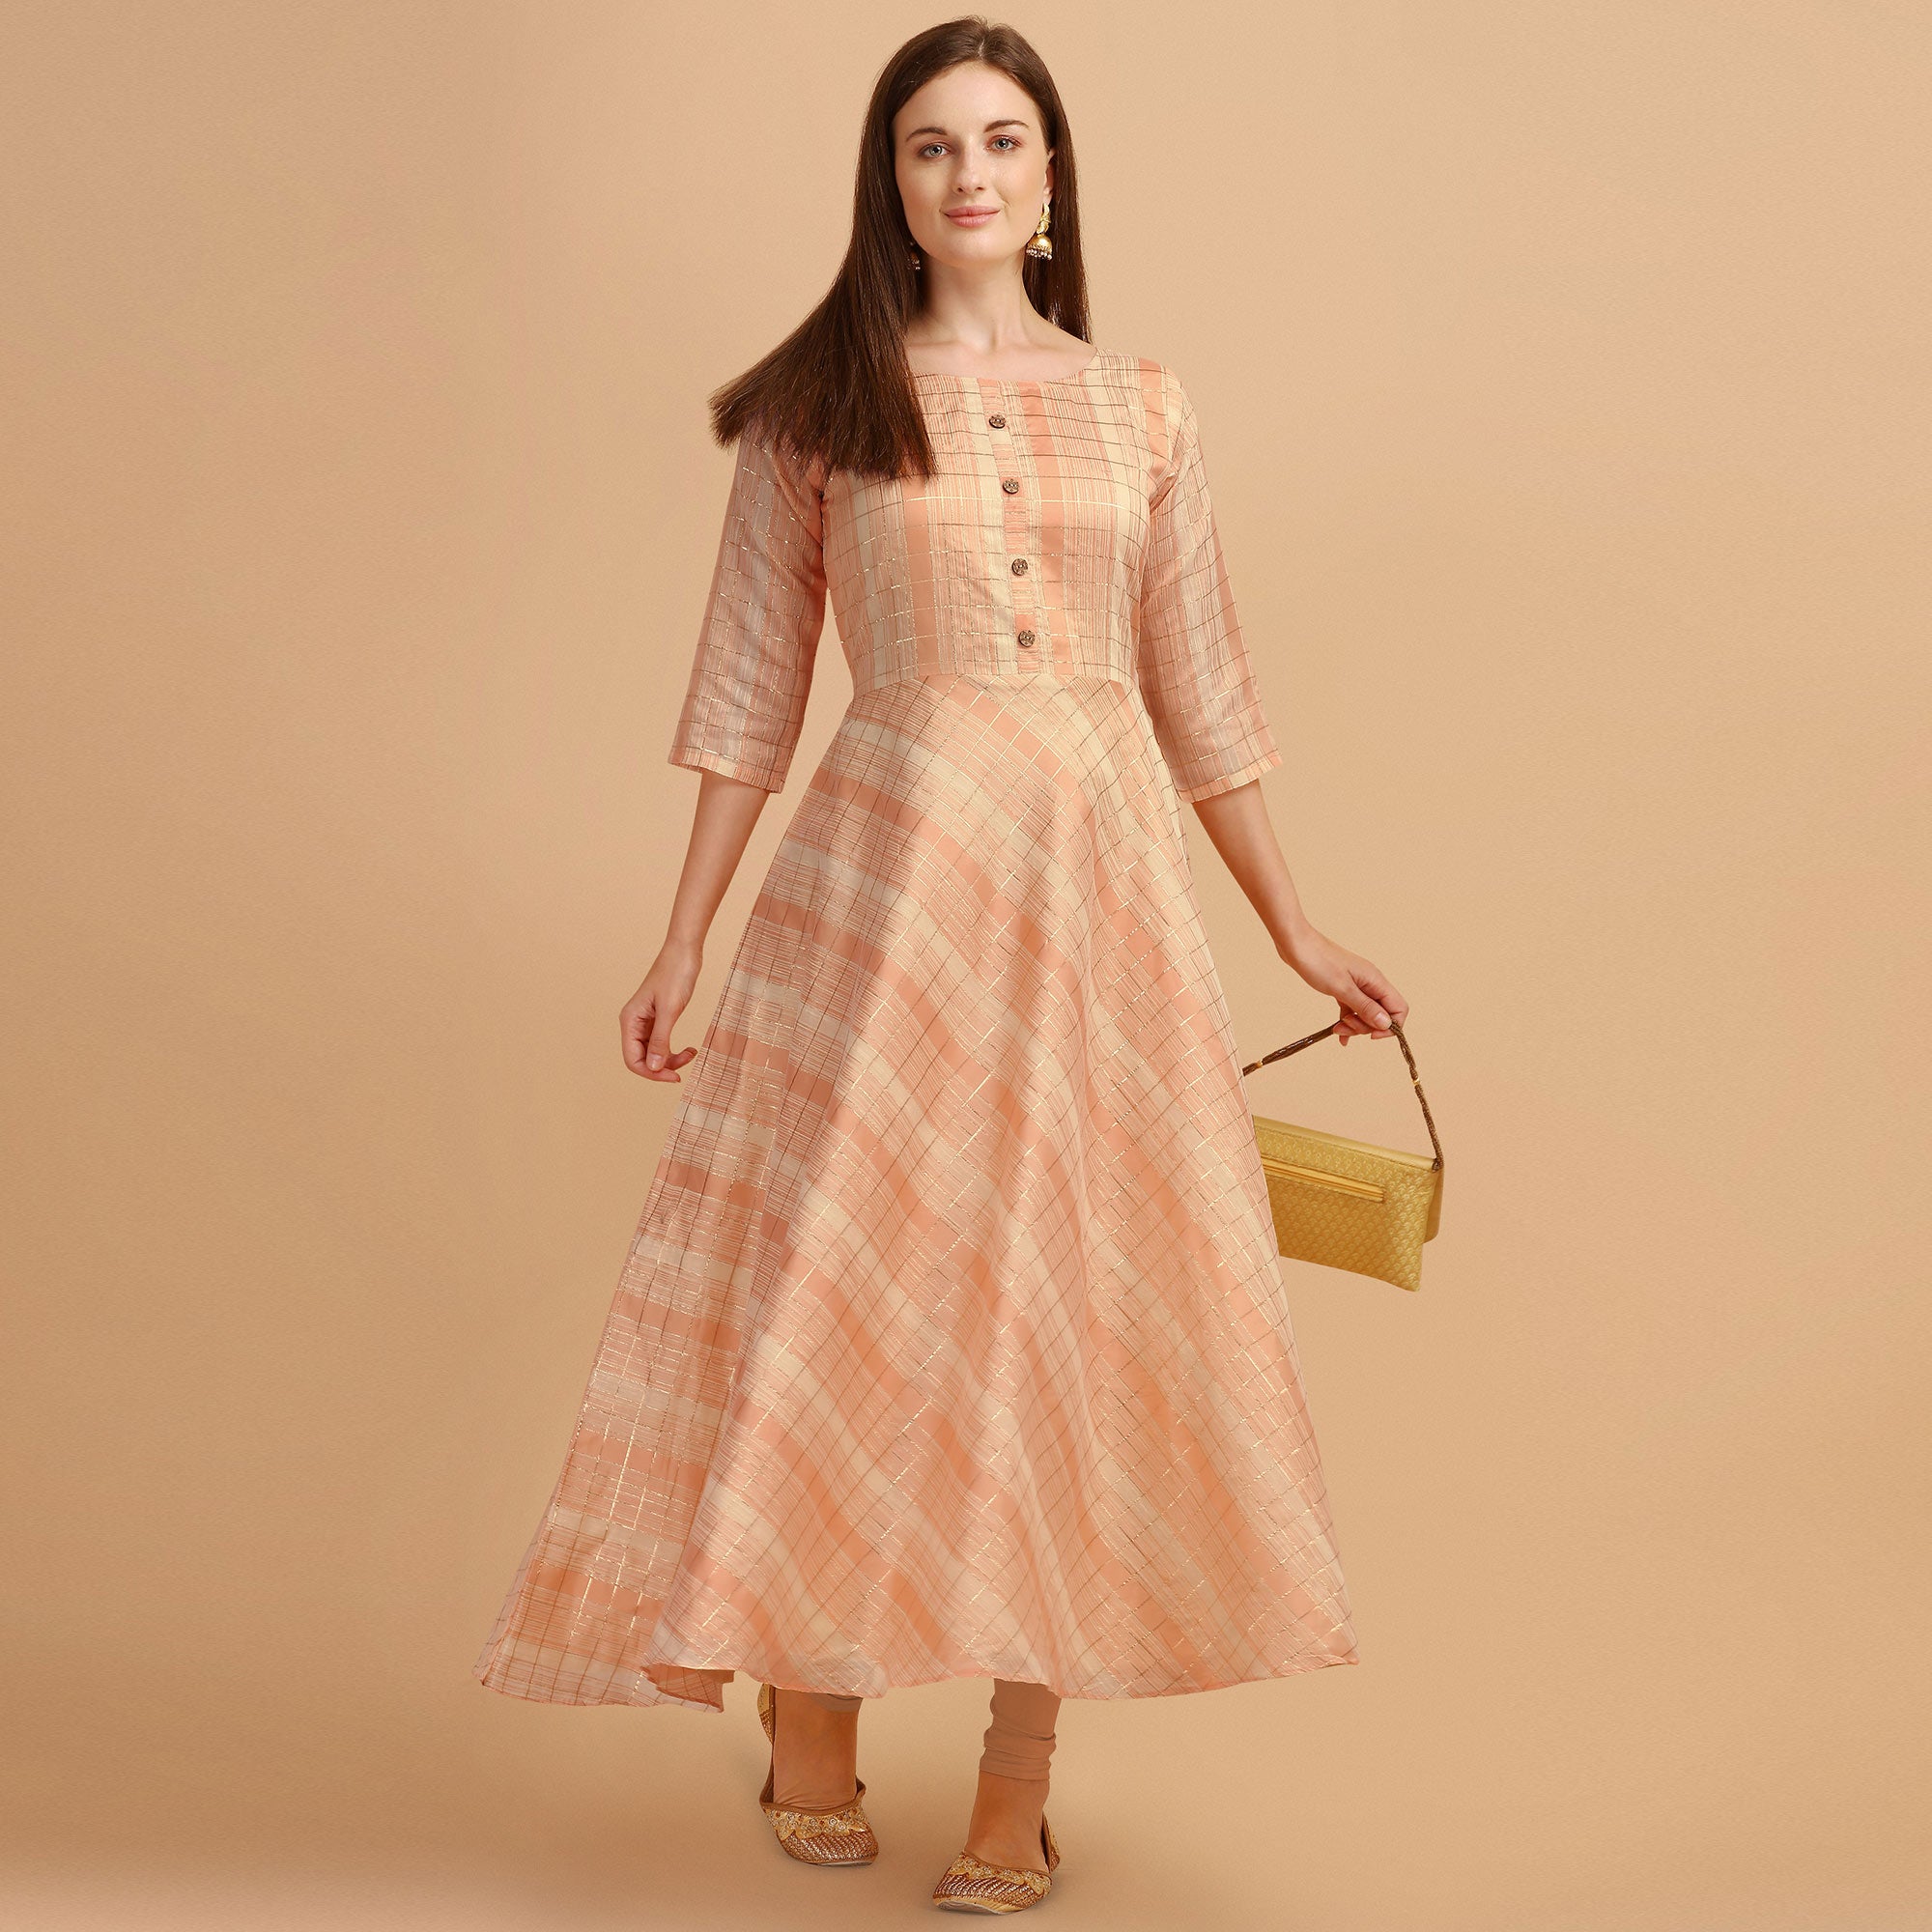 Peach Printed Chanderi Maxi Dress